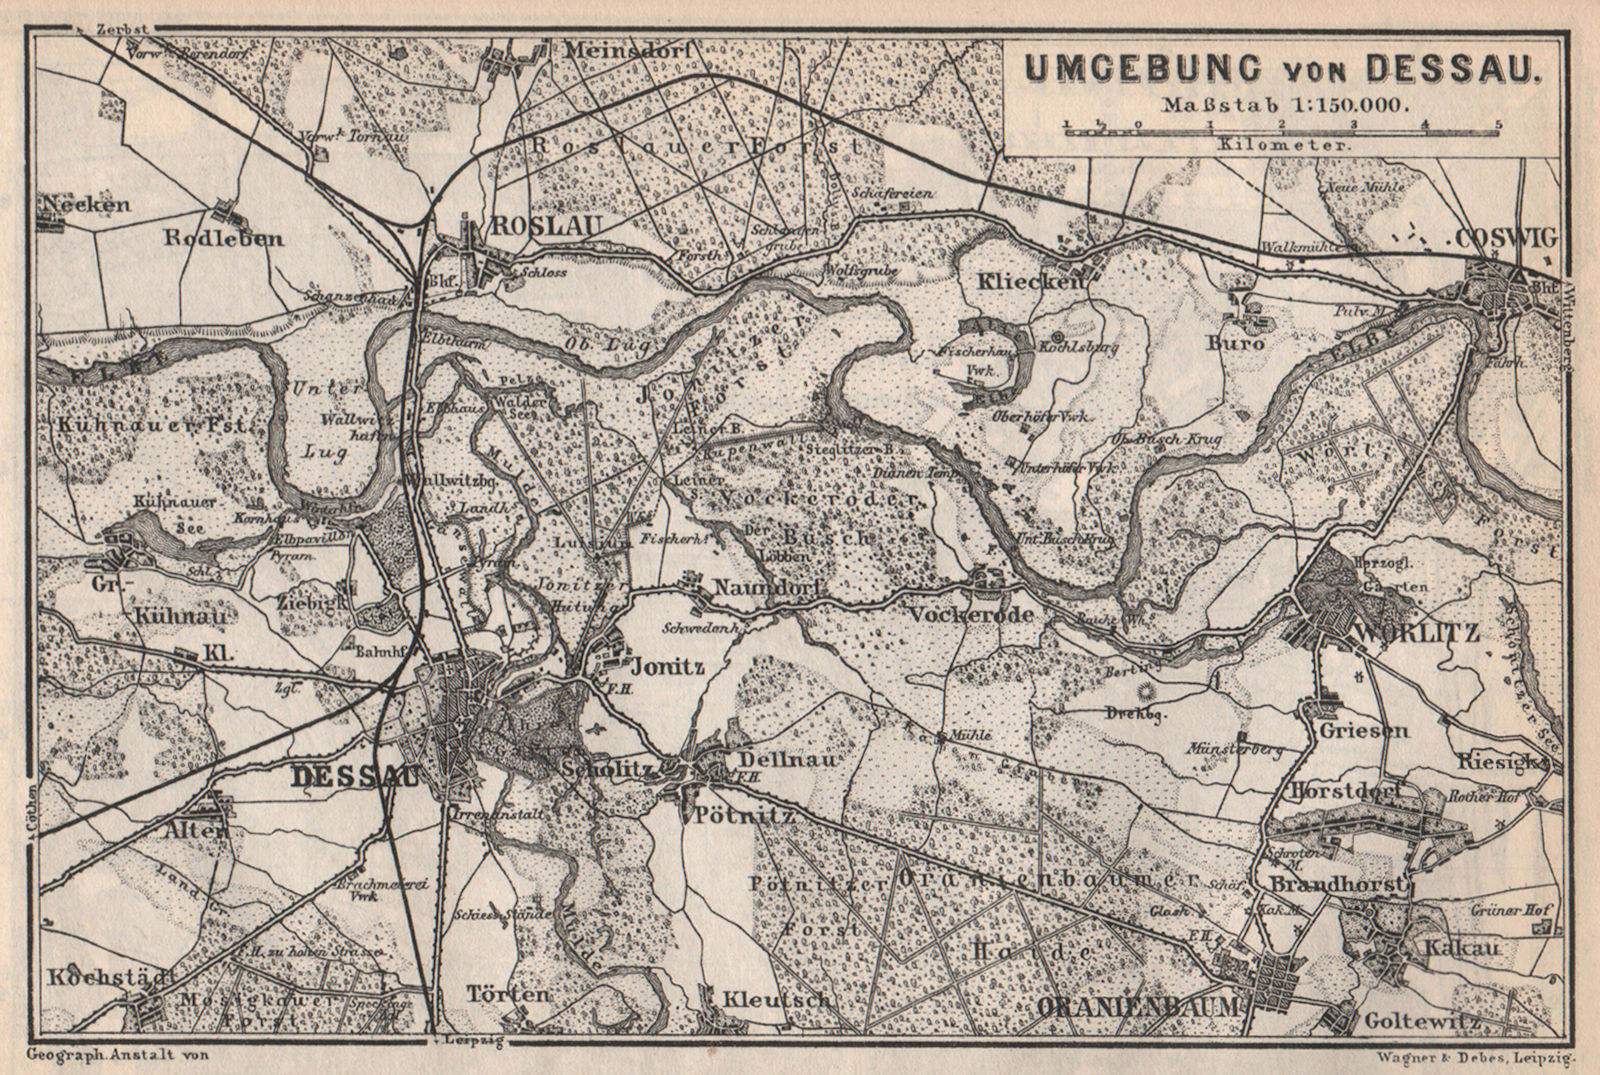 DESSAU environs/umgebung. Roslau Roßlau Worlitz Coswig Oranienbaum 1886 map